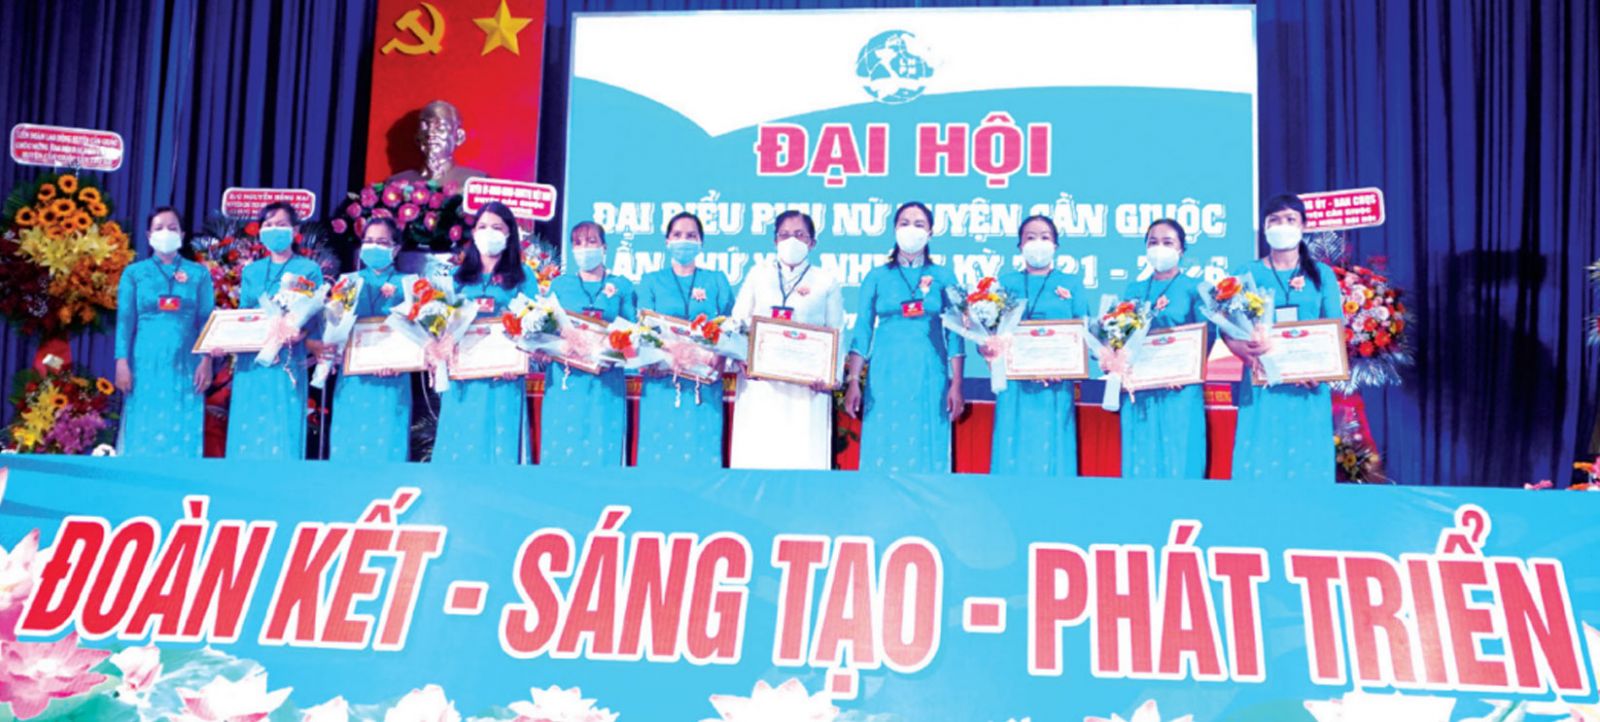 Chủ tịch Hội Liên hiệp Phụ nữ Việt Nam huyện Cần Giuộc - Huỳnh Thị Tuyết Hồng tặng giấy khen cho tập thể, cá nhân có thành tích trong công tác Hội và phong trào phụ nữ